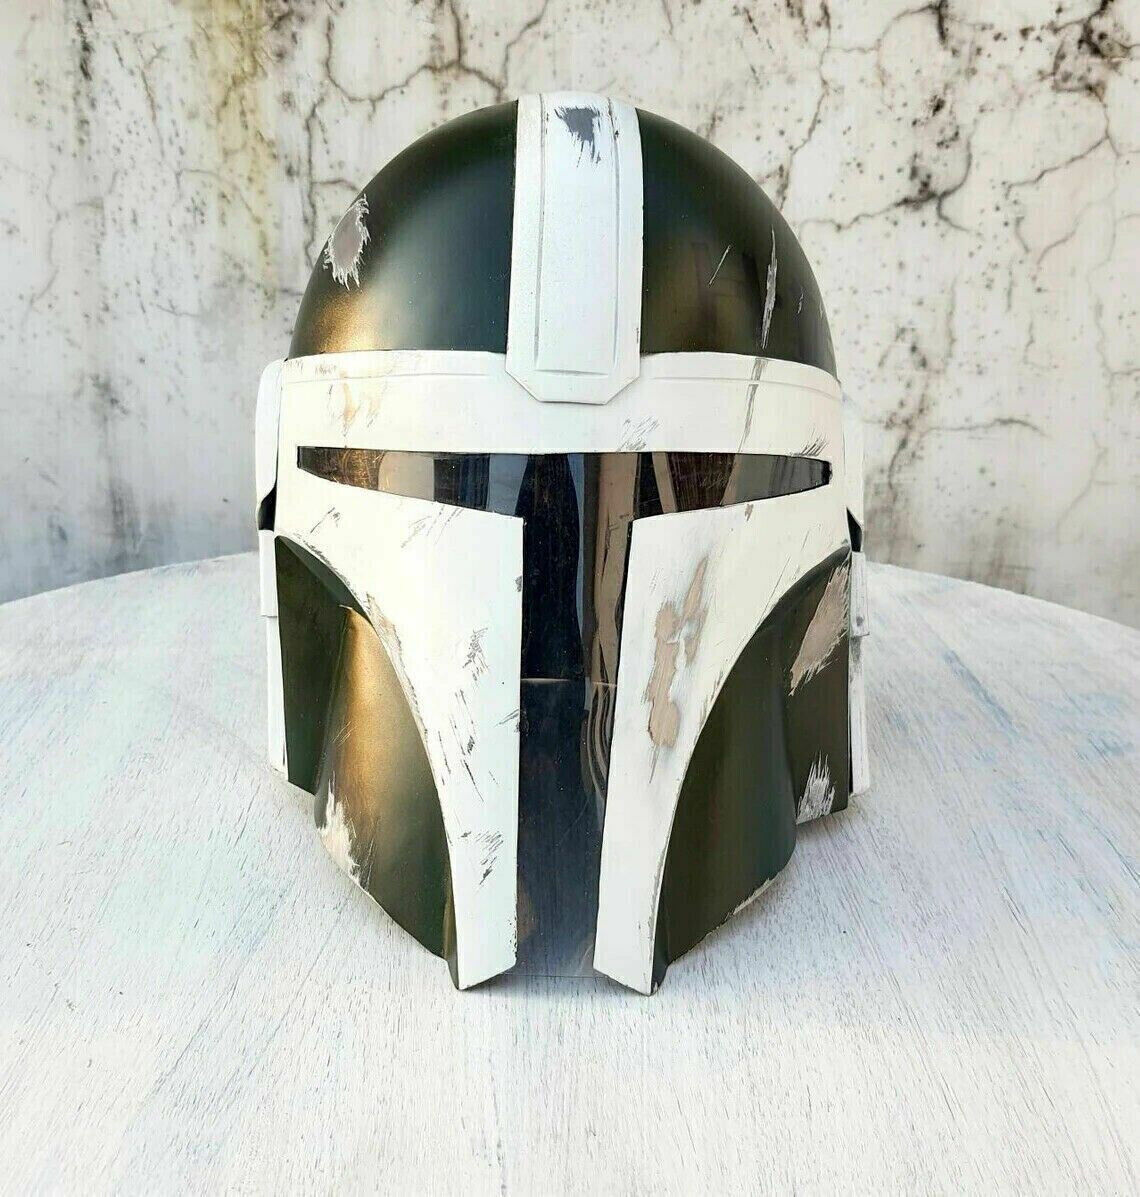 Disney Custom Boba Fett Mandalorian Steel Rare Helmet LARP Costume Fight Mask